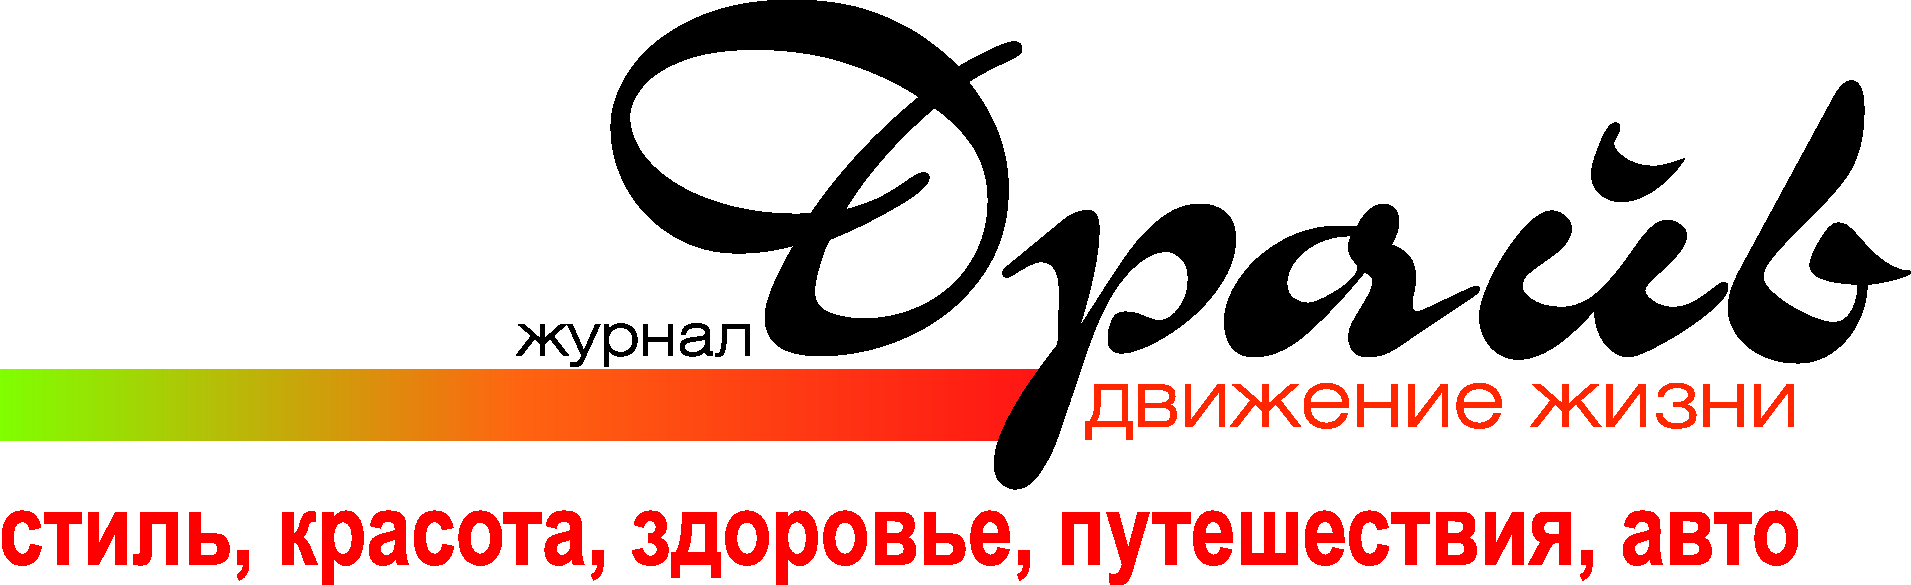 www.draivspb.ru